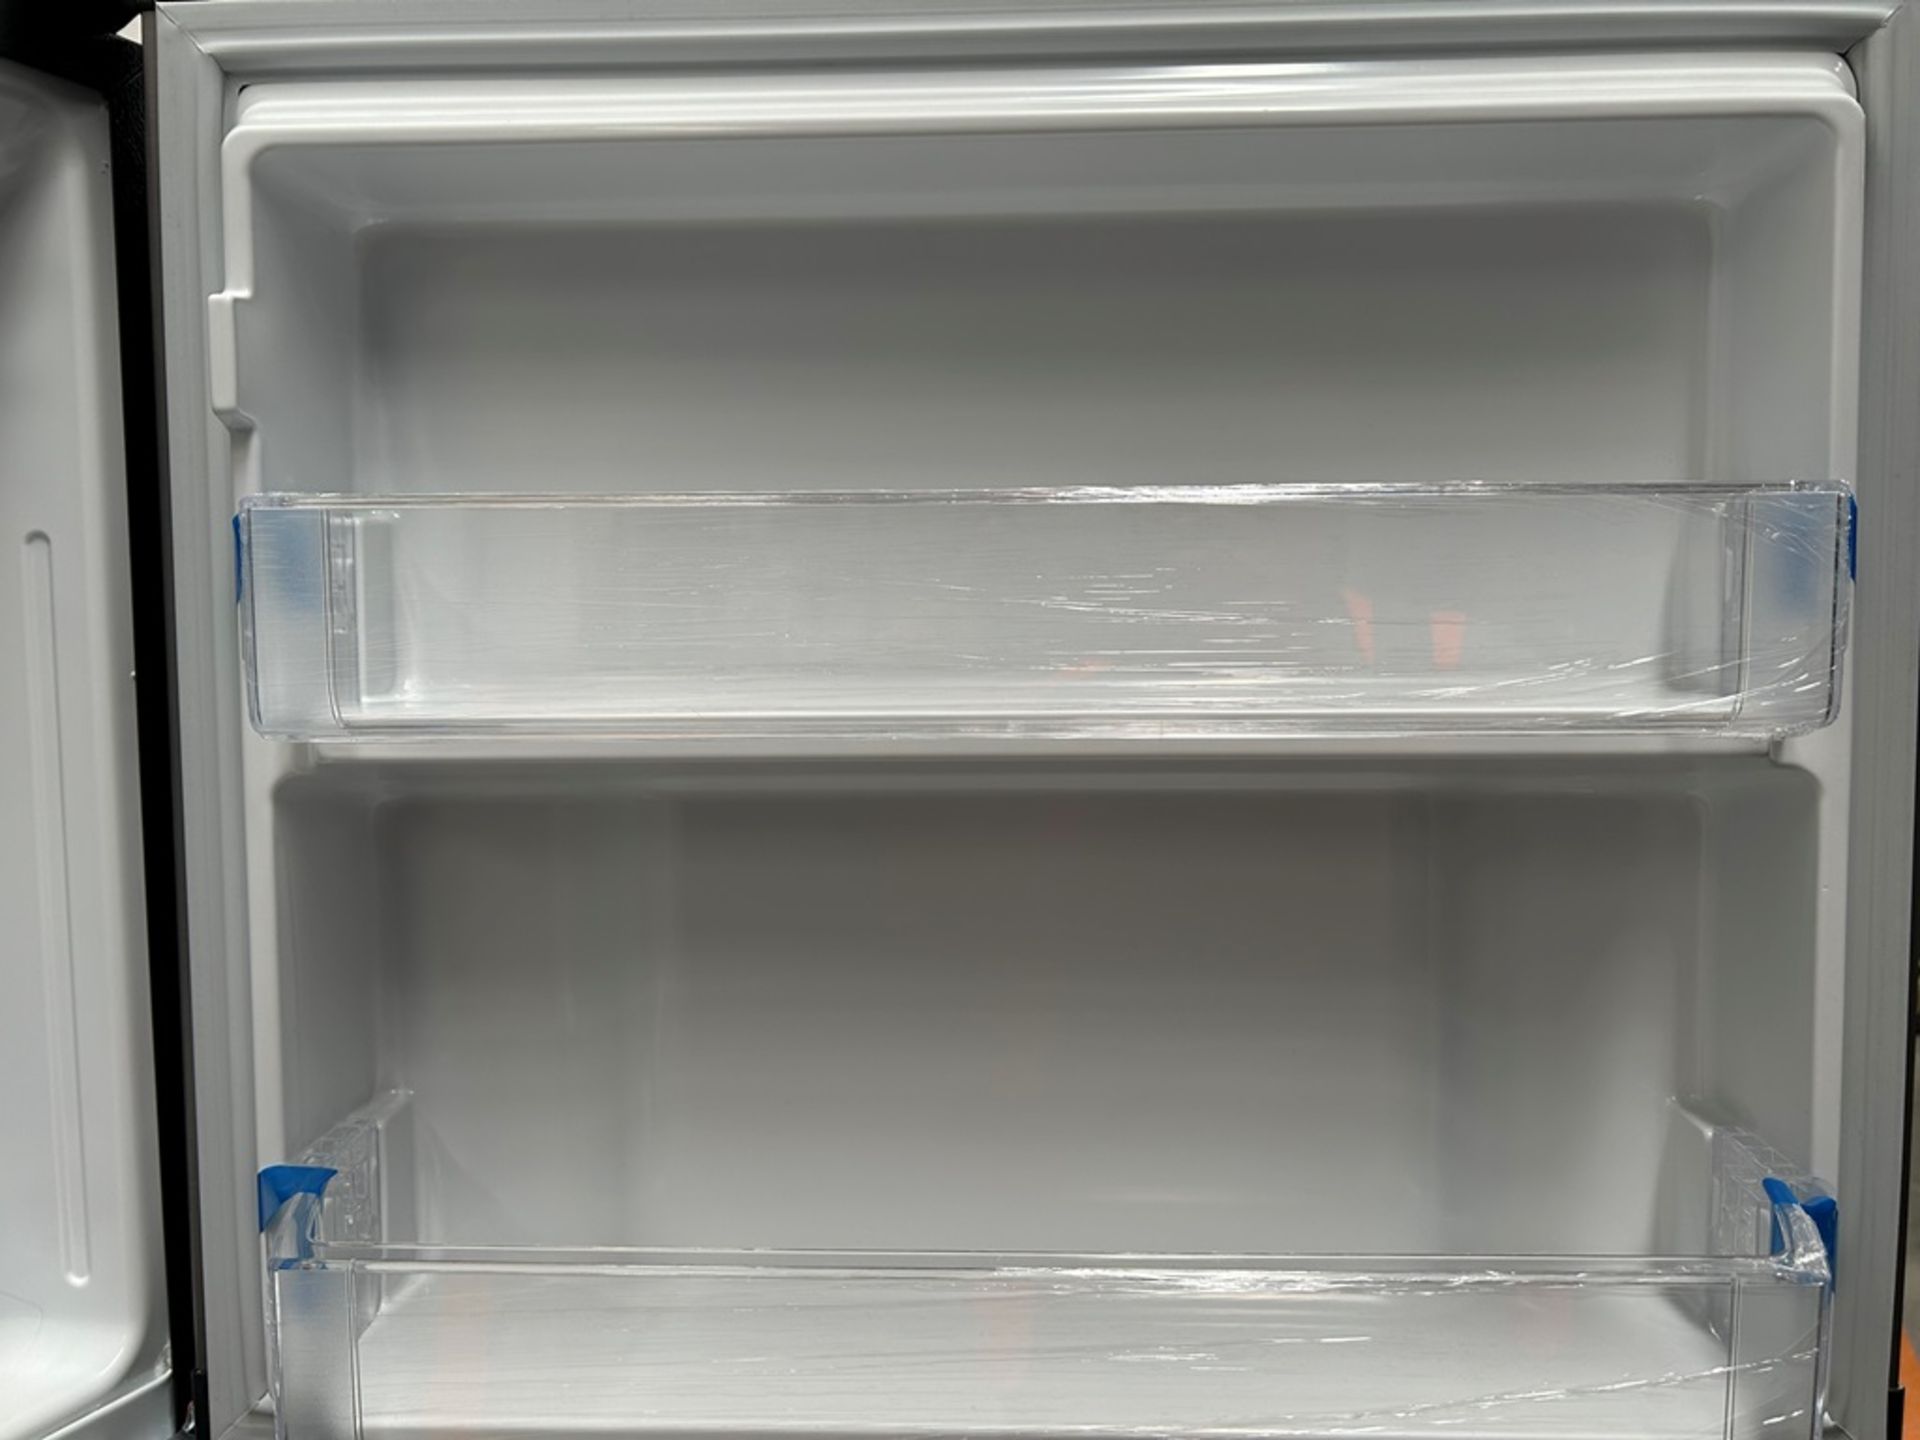 Lote de 2 refrigeradores contiene: 1 refrigerador Marca MABE, Modelo RME360PVMRM, Serie 01988, Colo - Image 6 of 18